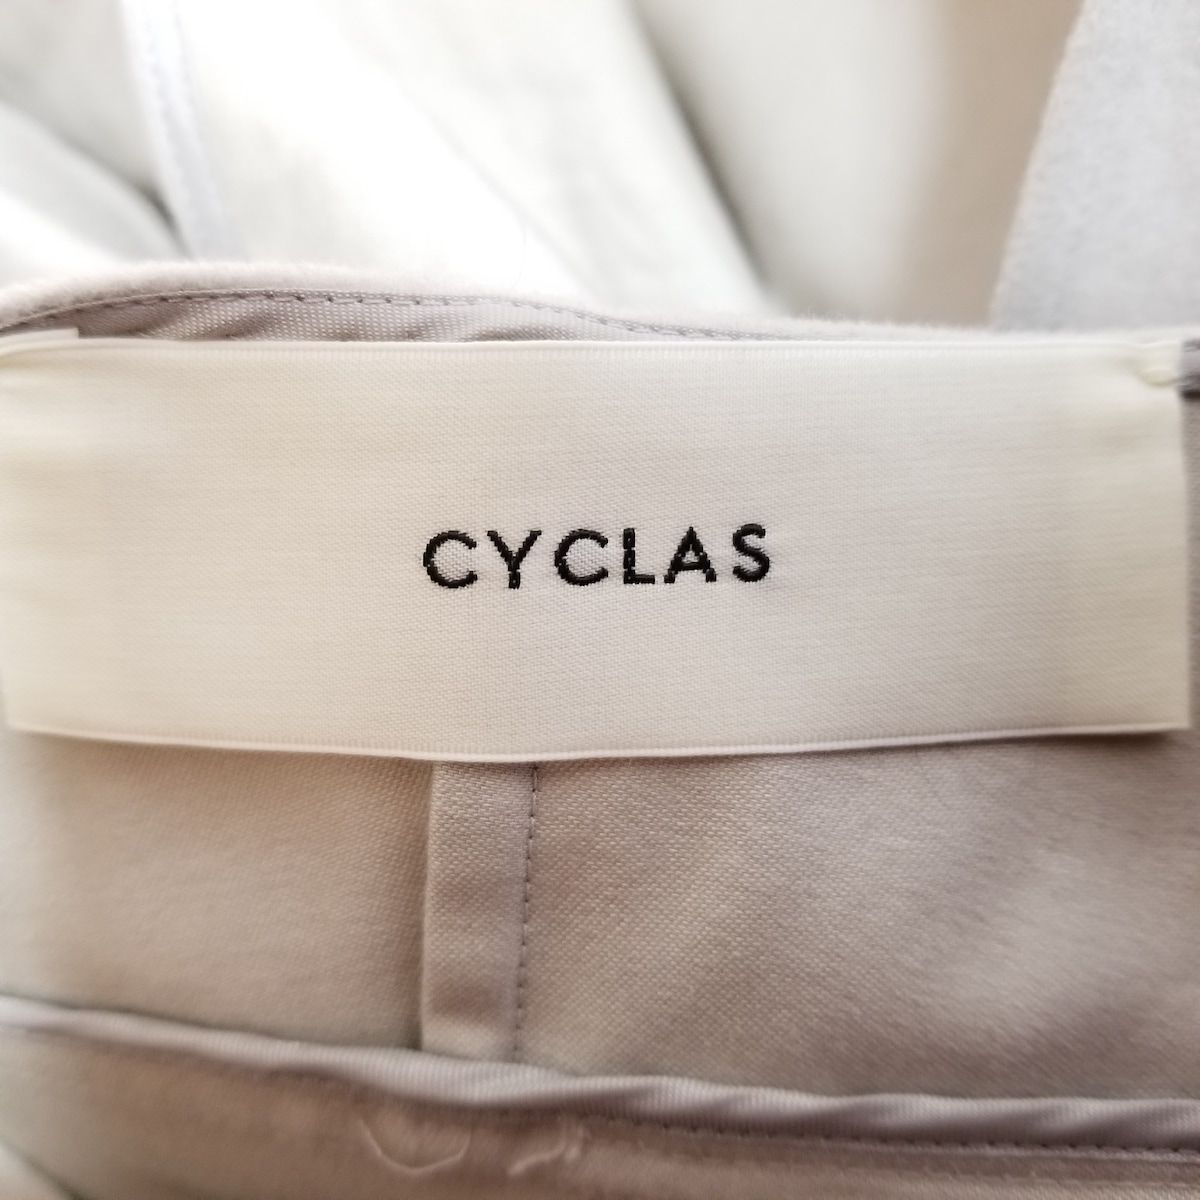 CYCLAS(シクラス) ワンピース サイズ34 S レディース - グレーベージュ 